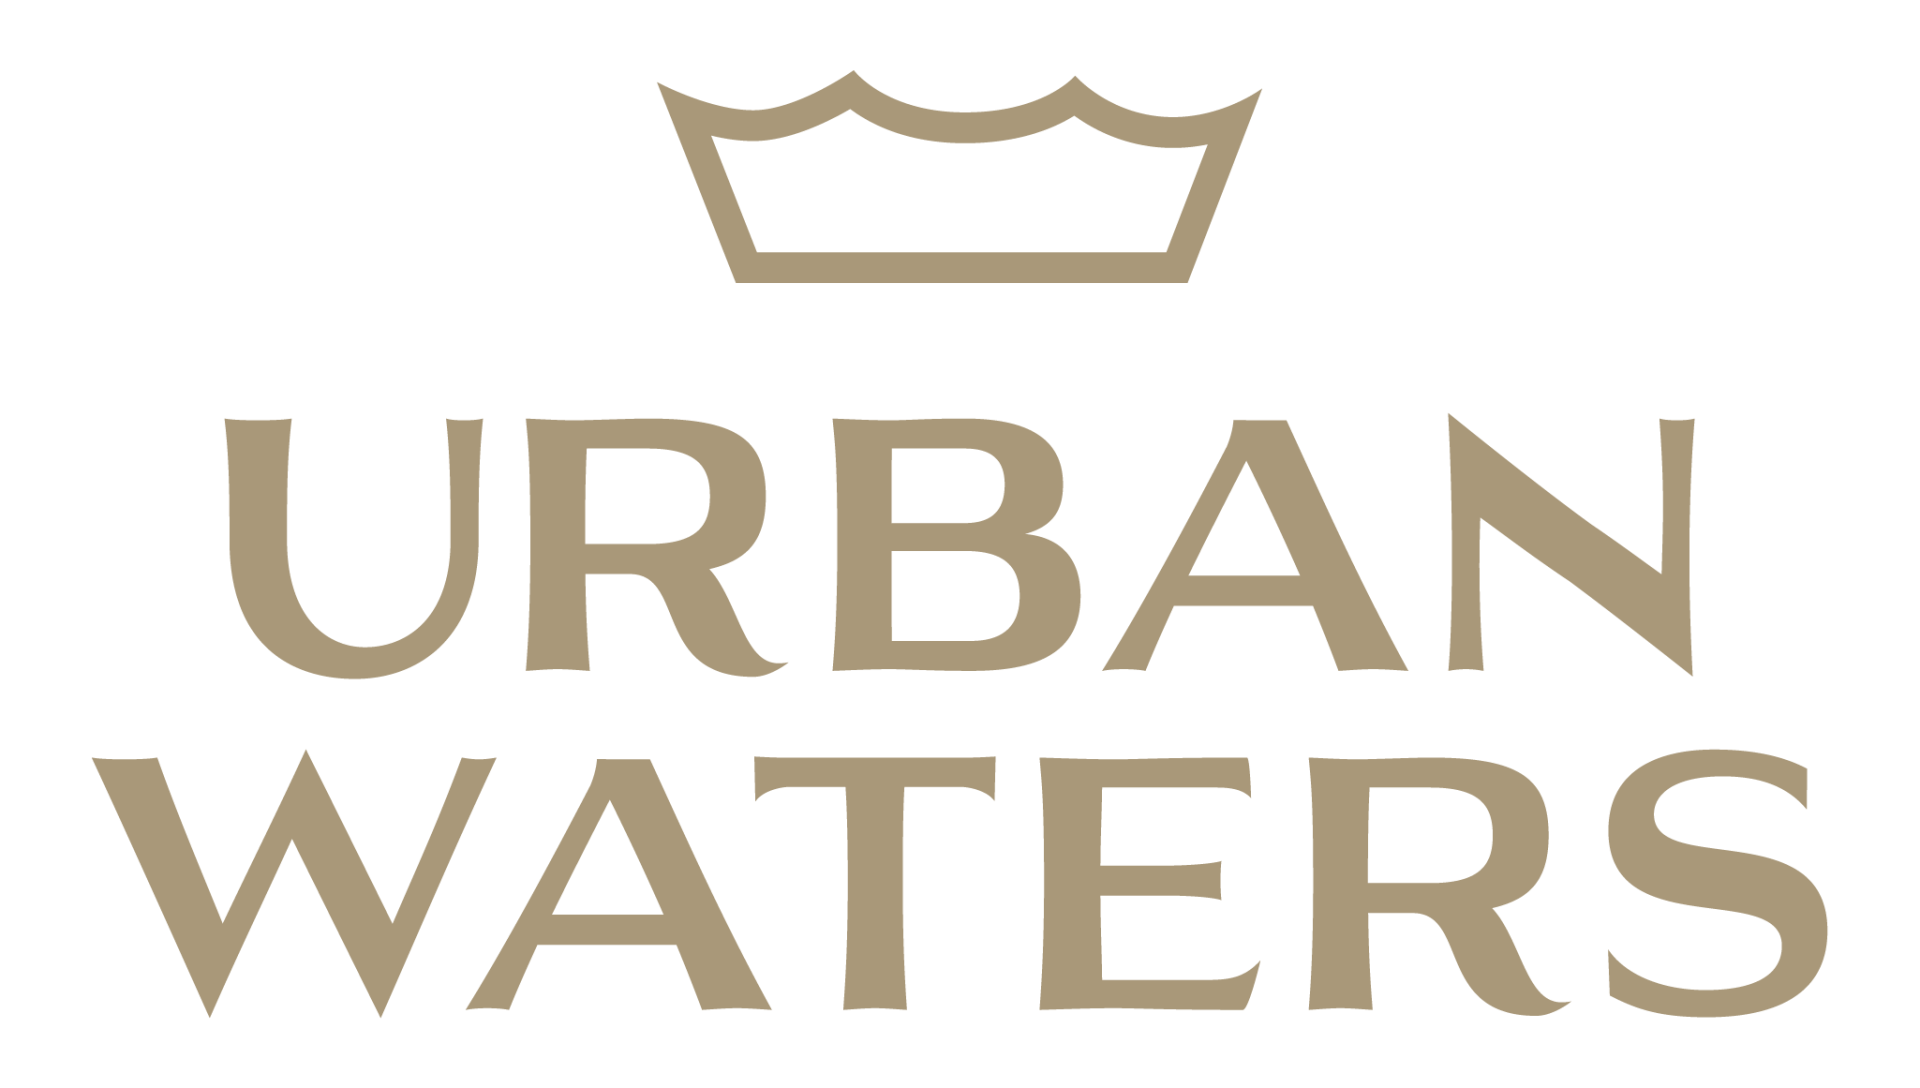 urban waters Logo